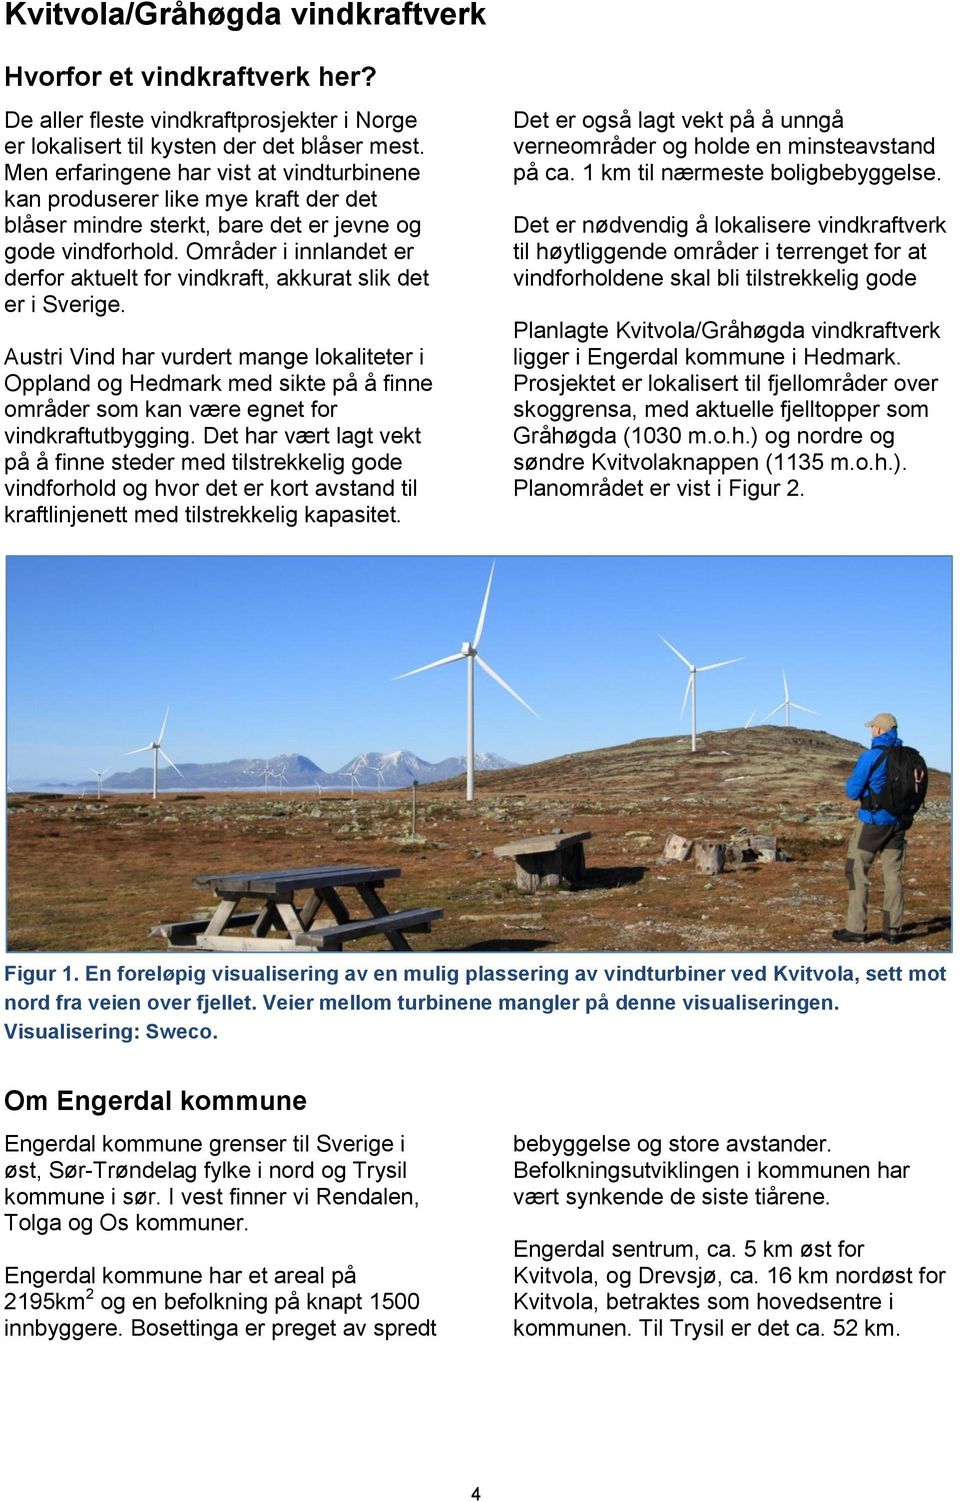 Områder i innlandet er derfor aktuelt for vindkraft, akkurat slik det er i Sverige.